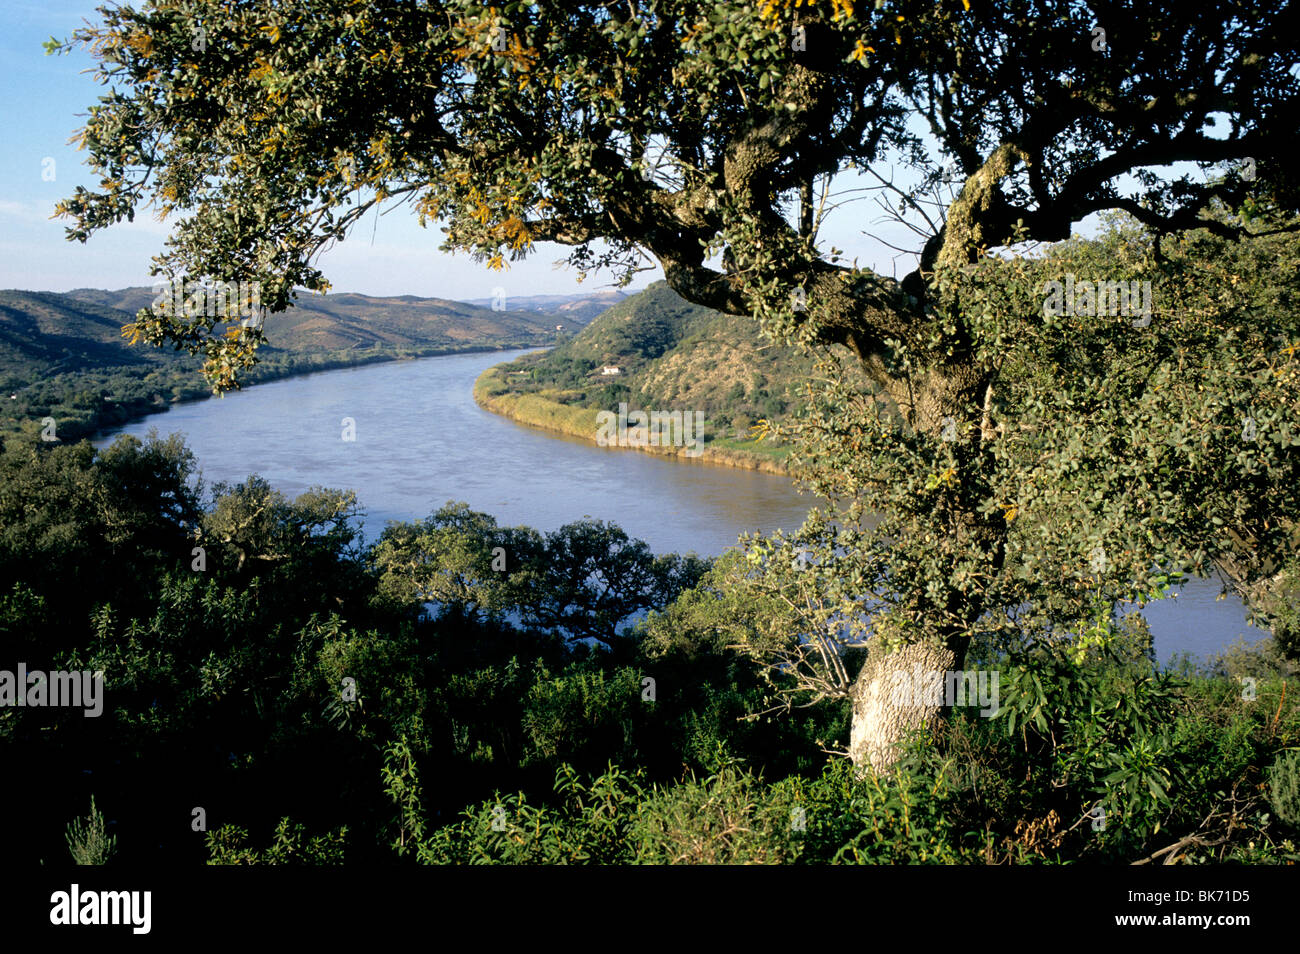 Il fiume Guadiana in Portogallo meridionale della provincia di Algarve. Il fiume forma un confine naturale tra la Spagna e il Portogallo. Foto Stock